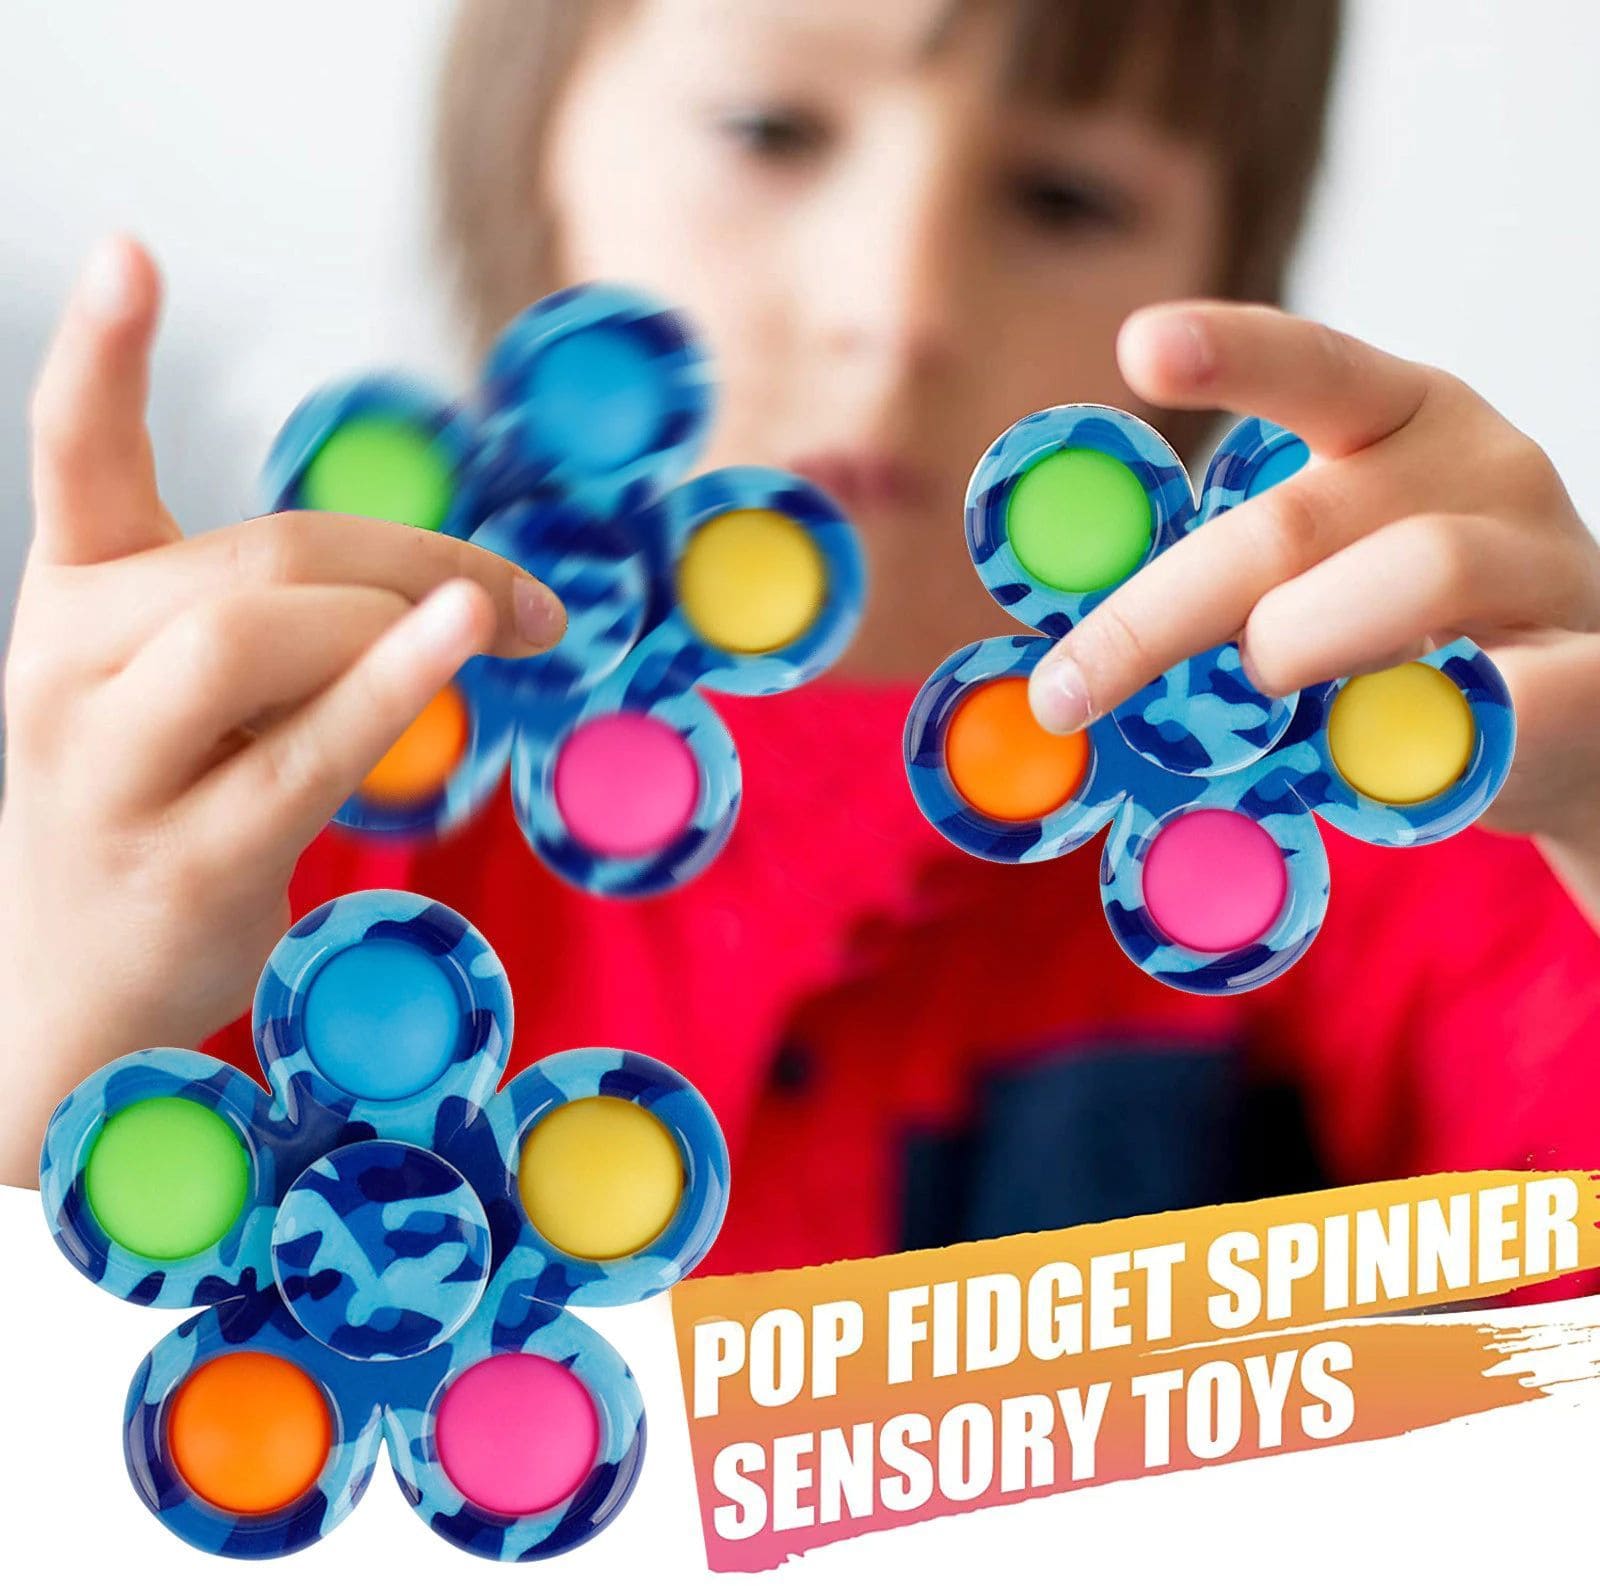 Fidget Toys - Rotiere den Spinner zwischen Daumen und Zeigefinger | Maicona